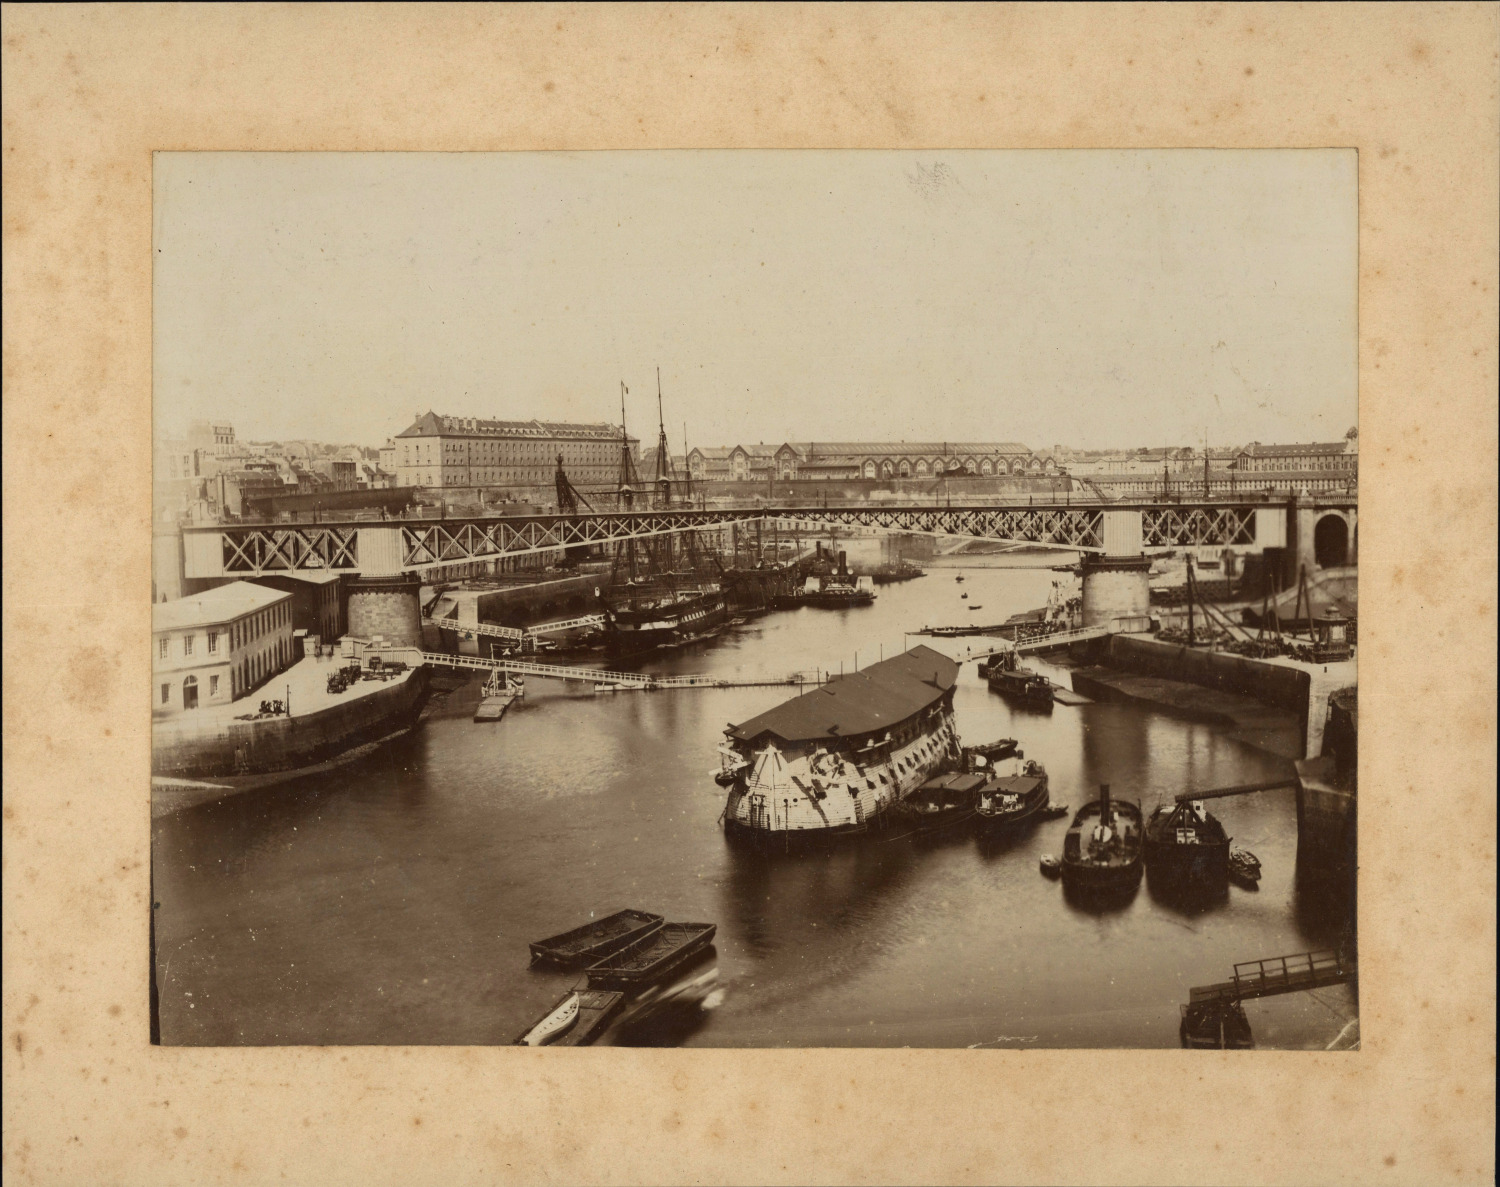 France, Brest, le Port, ca.1880, vintage albumin print vintage print, legend